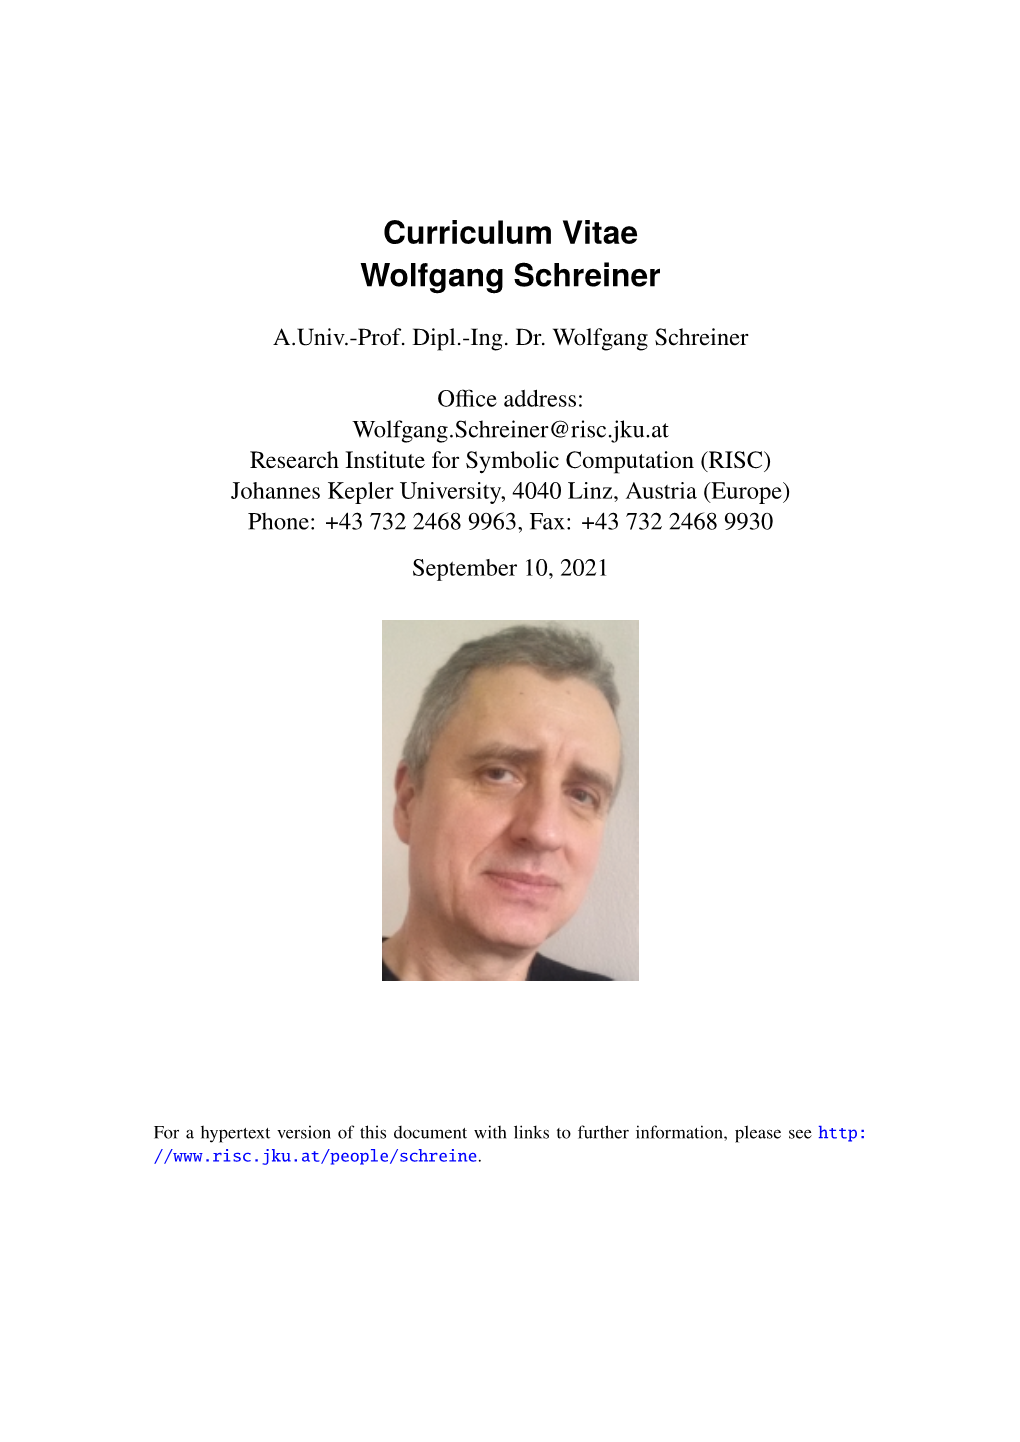 Curriculum Vitae Wolfgang Schreiner